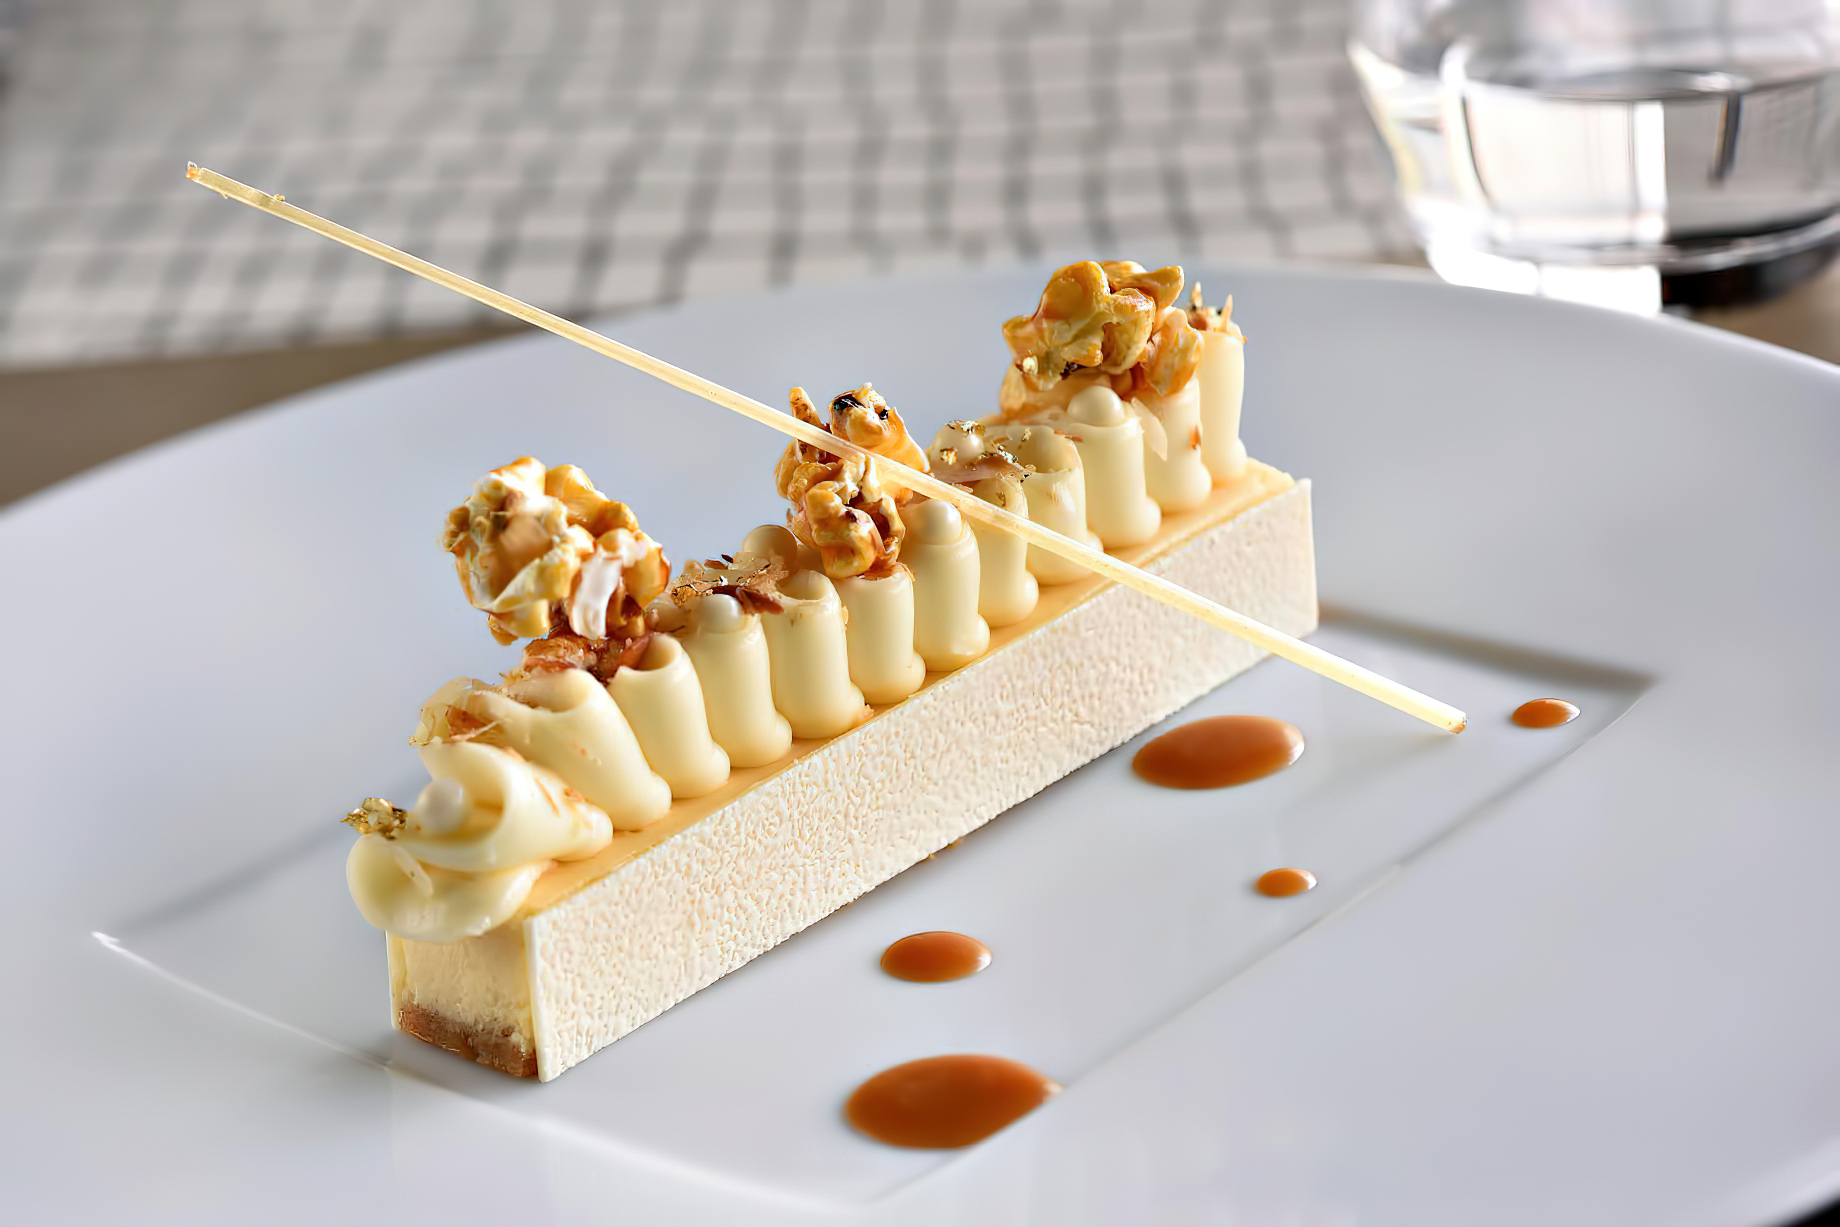 Armani Hotel Dubai – Burj Khalifa, Dubai, UAE – Armani Signature Dessert